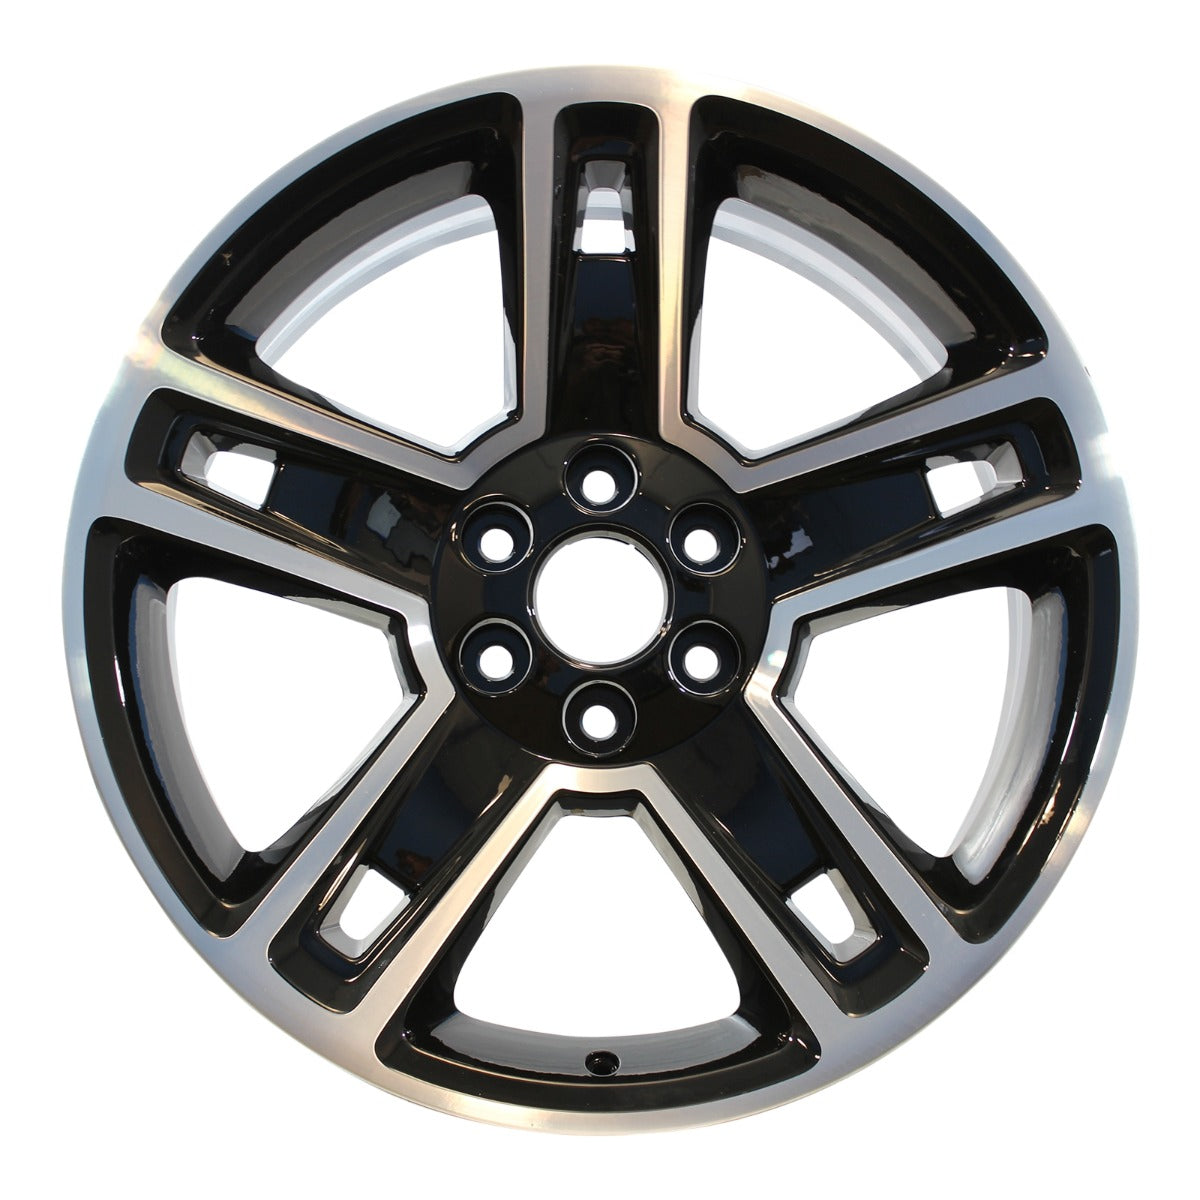 2014 Chevrolet Silverado 1500 22" OEM Wheel Rim W5664MB